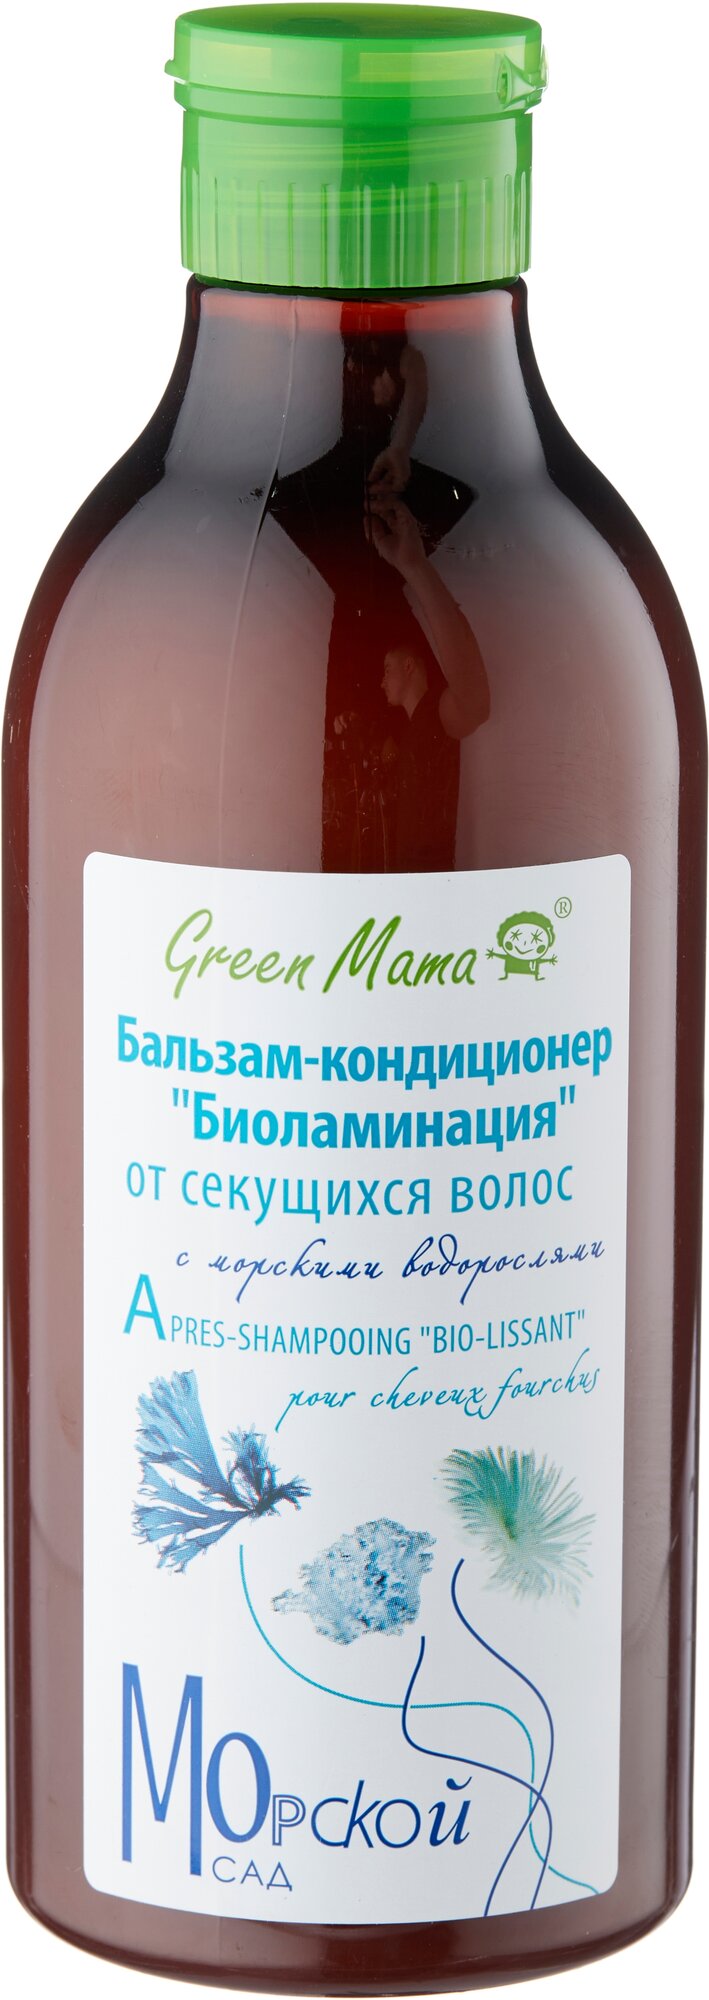 Green Mama бальзам-кондиционер Морской сад Биоламинация от секущихся волос с морскими водорослями